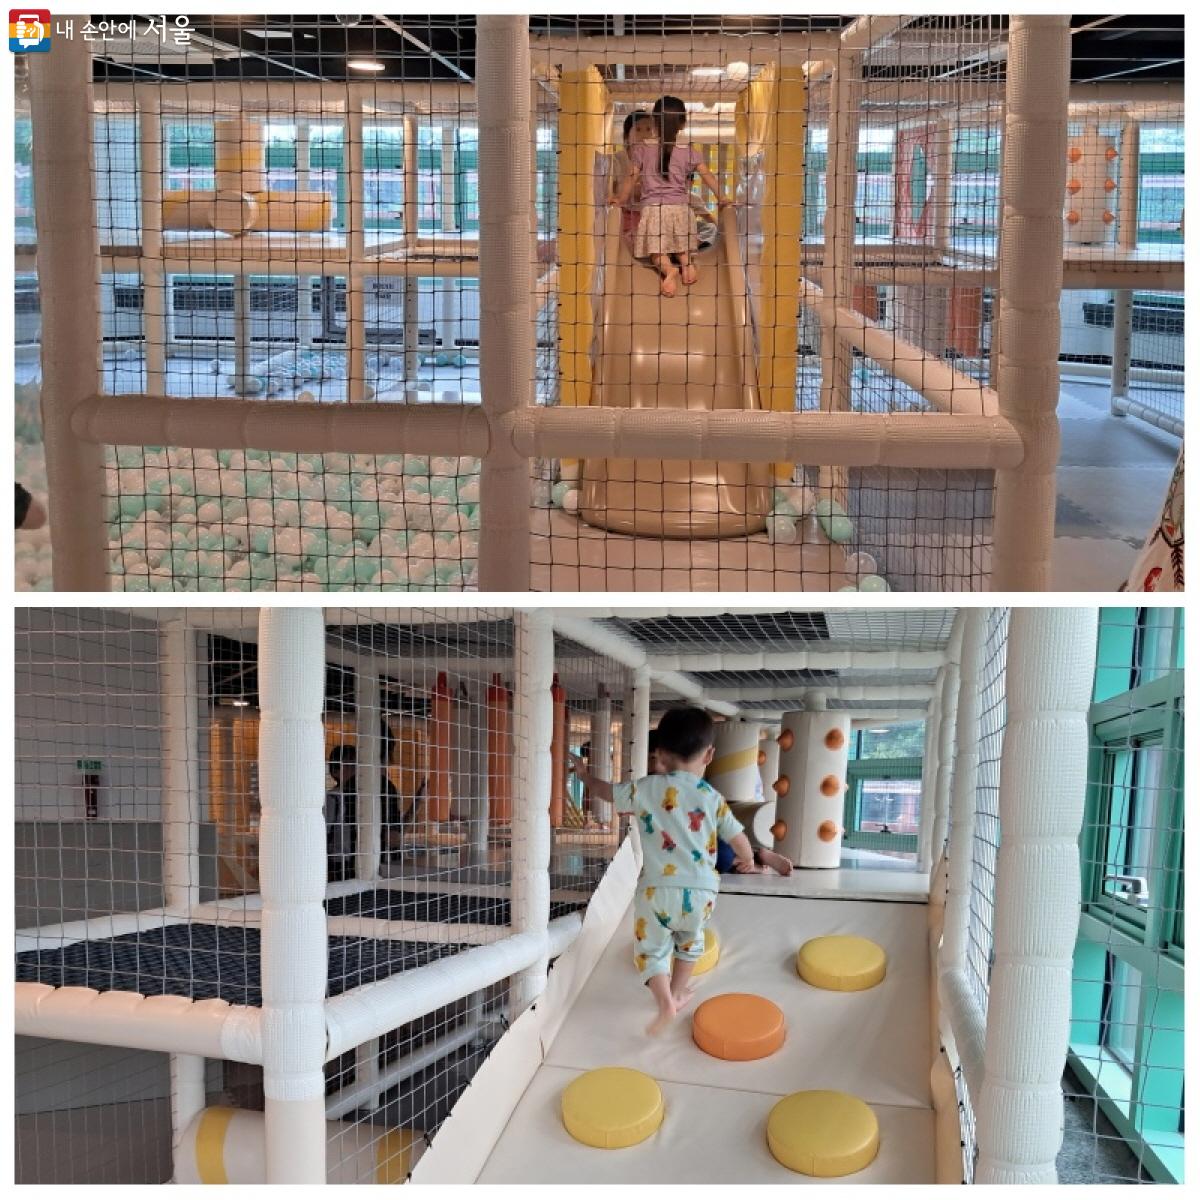 팔각당 실내놀이터 2층은 유아들을 위한 놀이 공간으로 꾸며져 있다. ⓒ이선미 